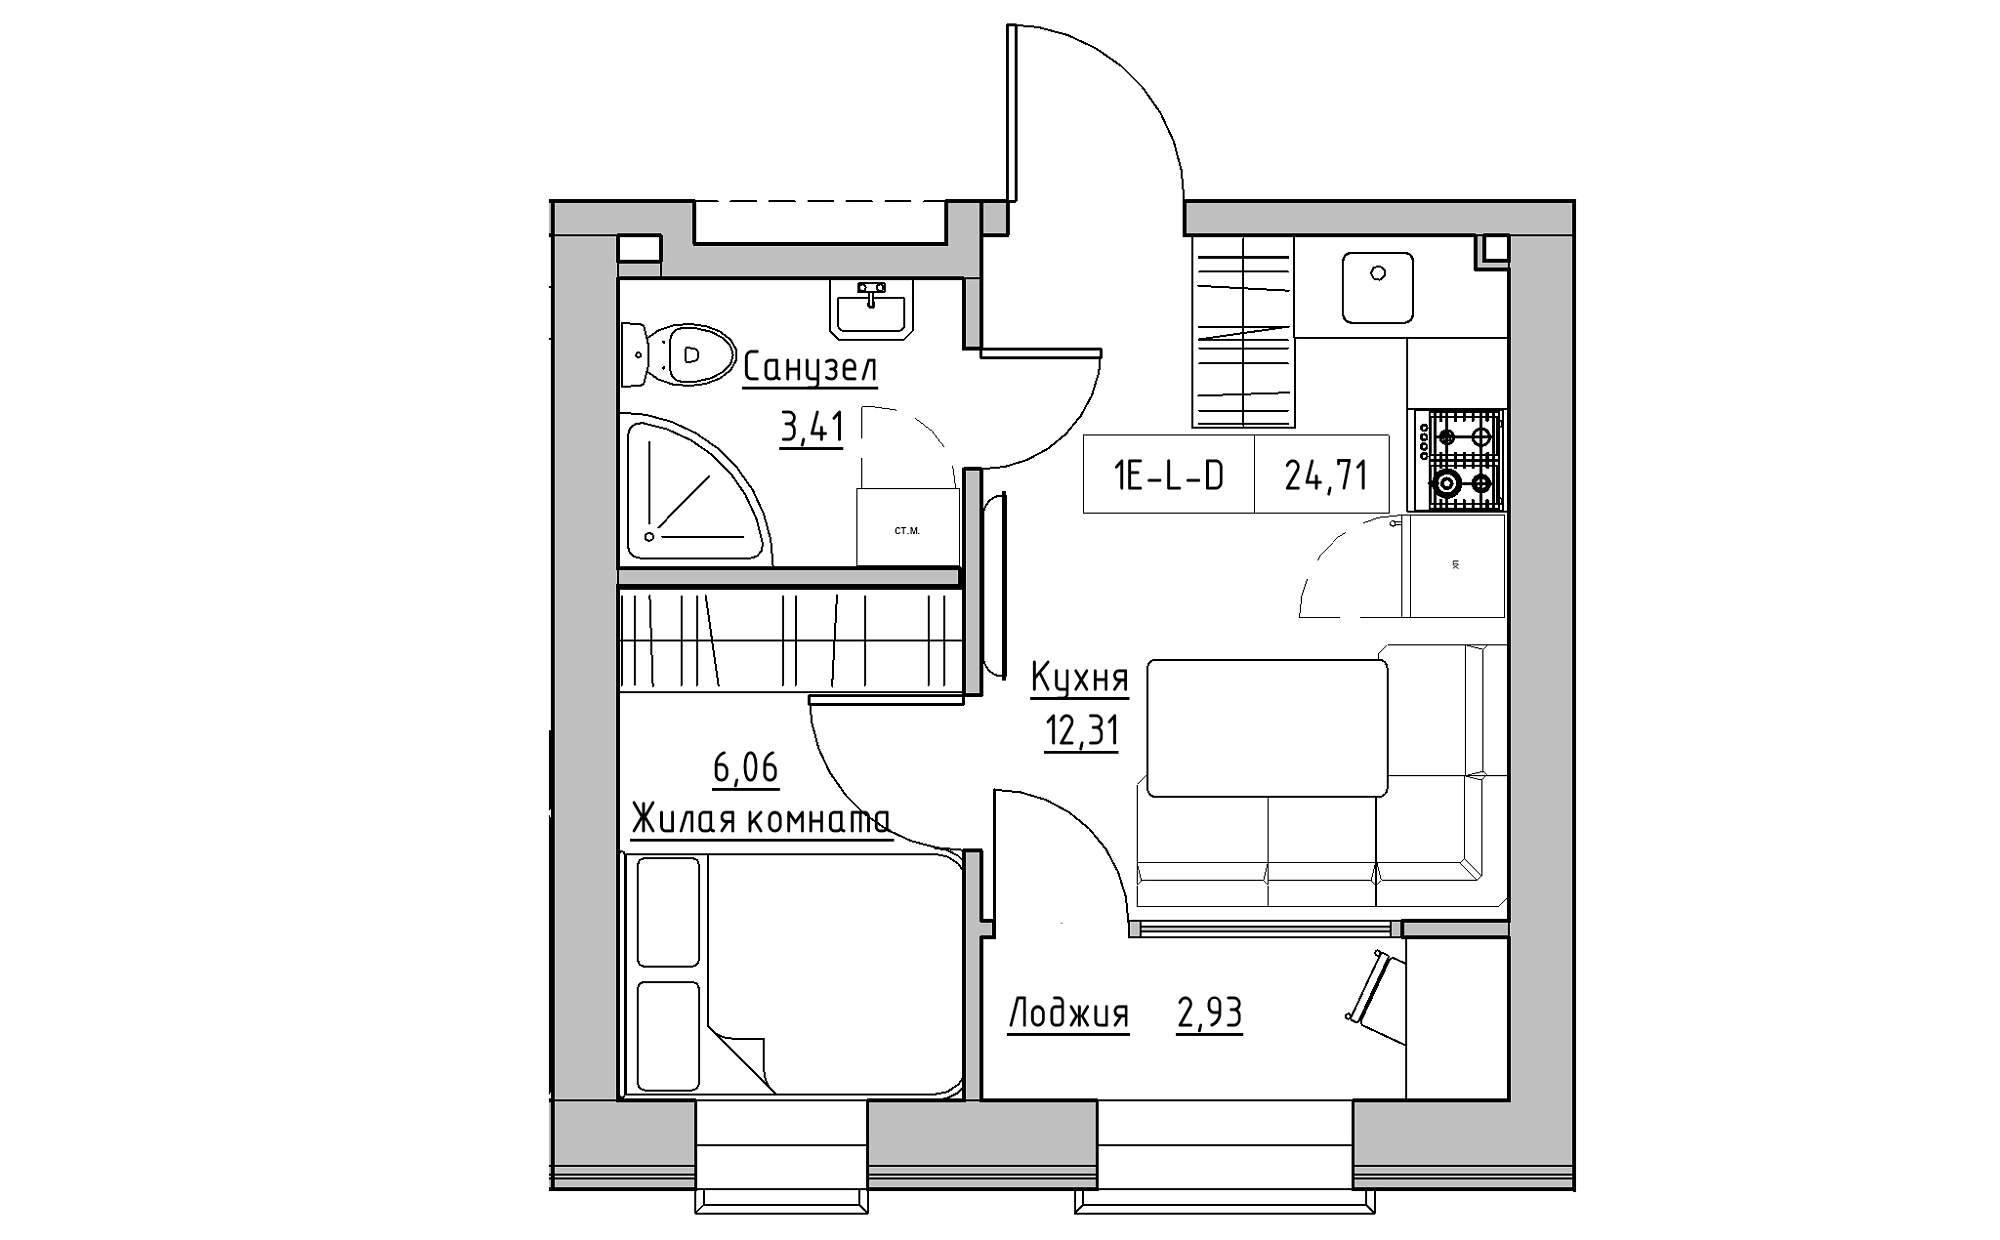 Планировка 1-к квартира площей 24.71м2, KS-022-01/0002.